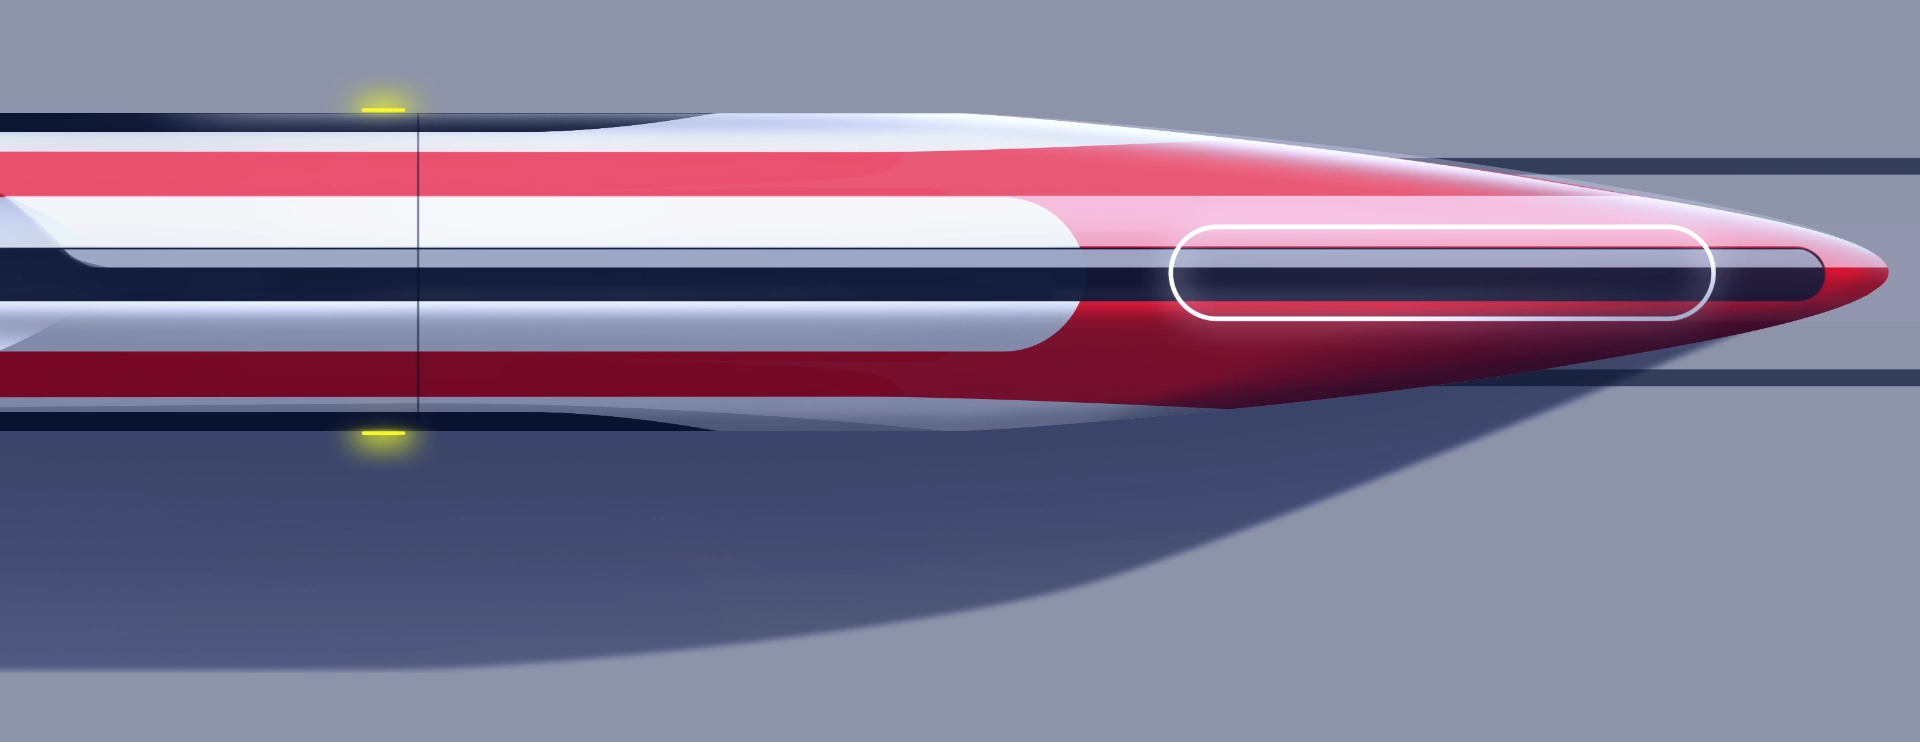 SpeedTrain Red Dragon Concept Main Image_Design by Werkemotion